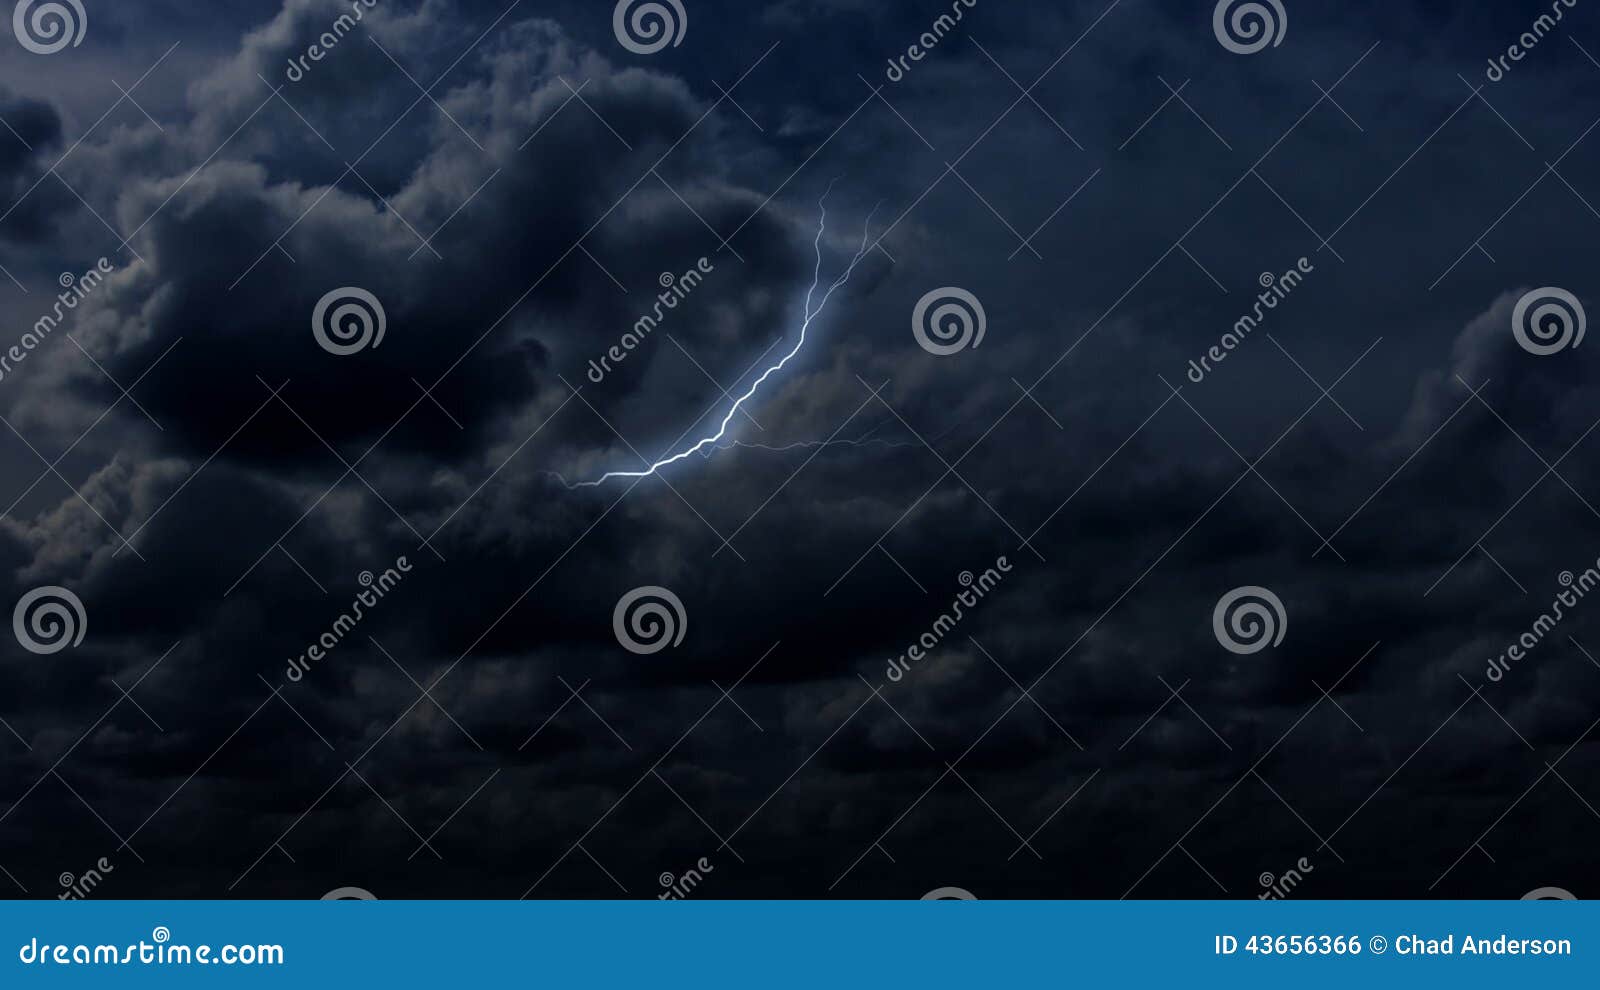 暴风雨背景图片-暴风雨背景素材图片-千库网